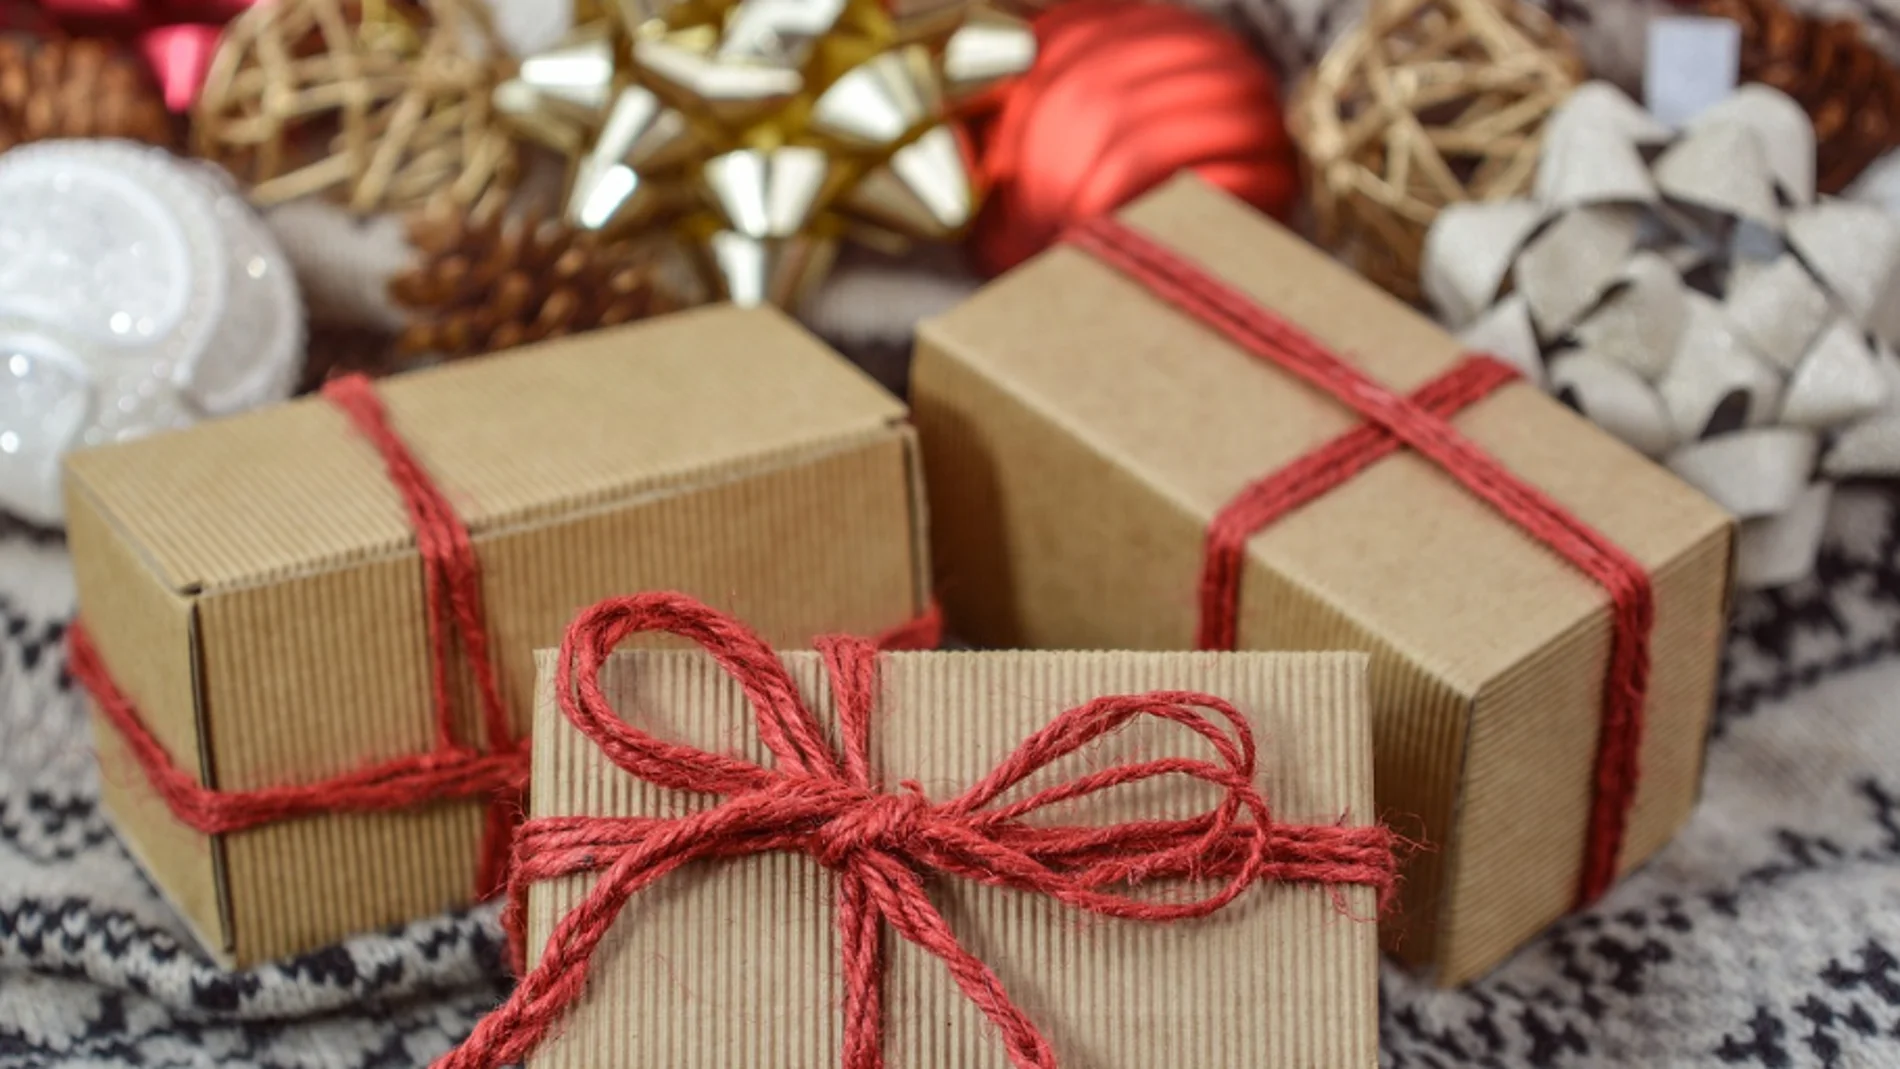 ¿Qué regalar en Navidad? Ideas de regalos originales 